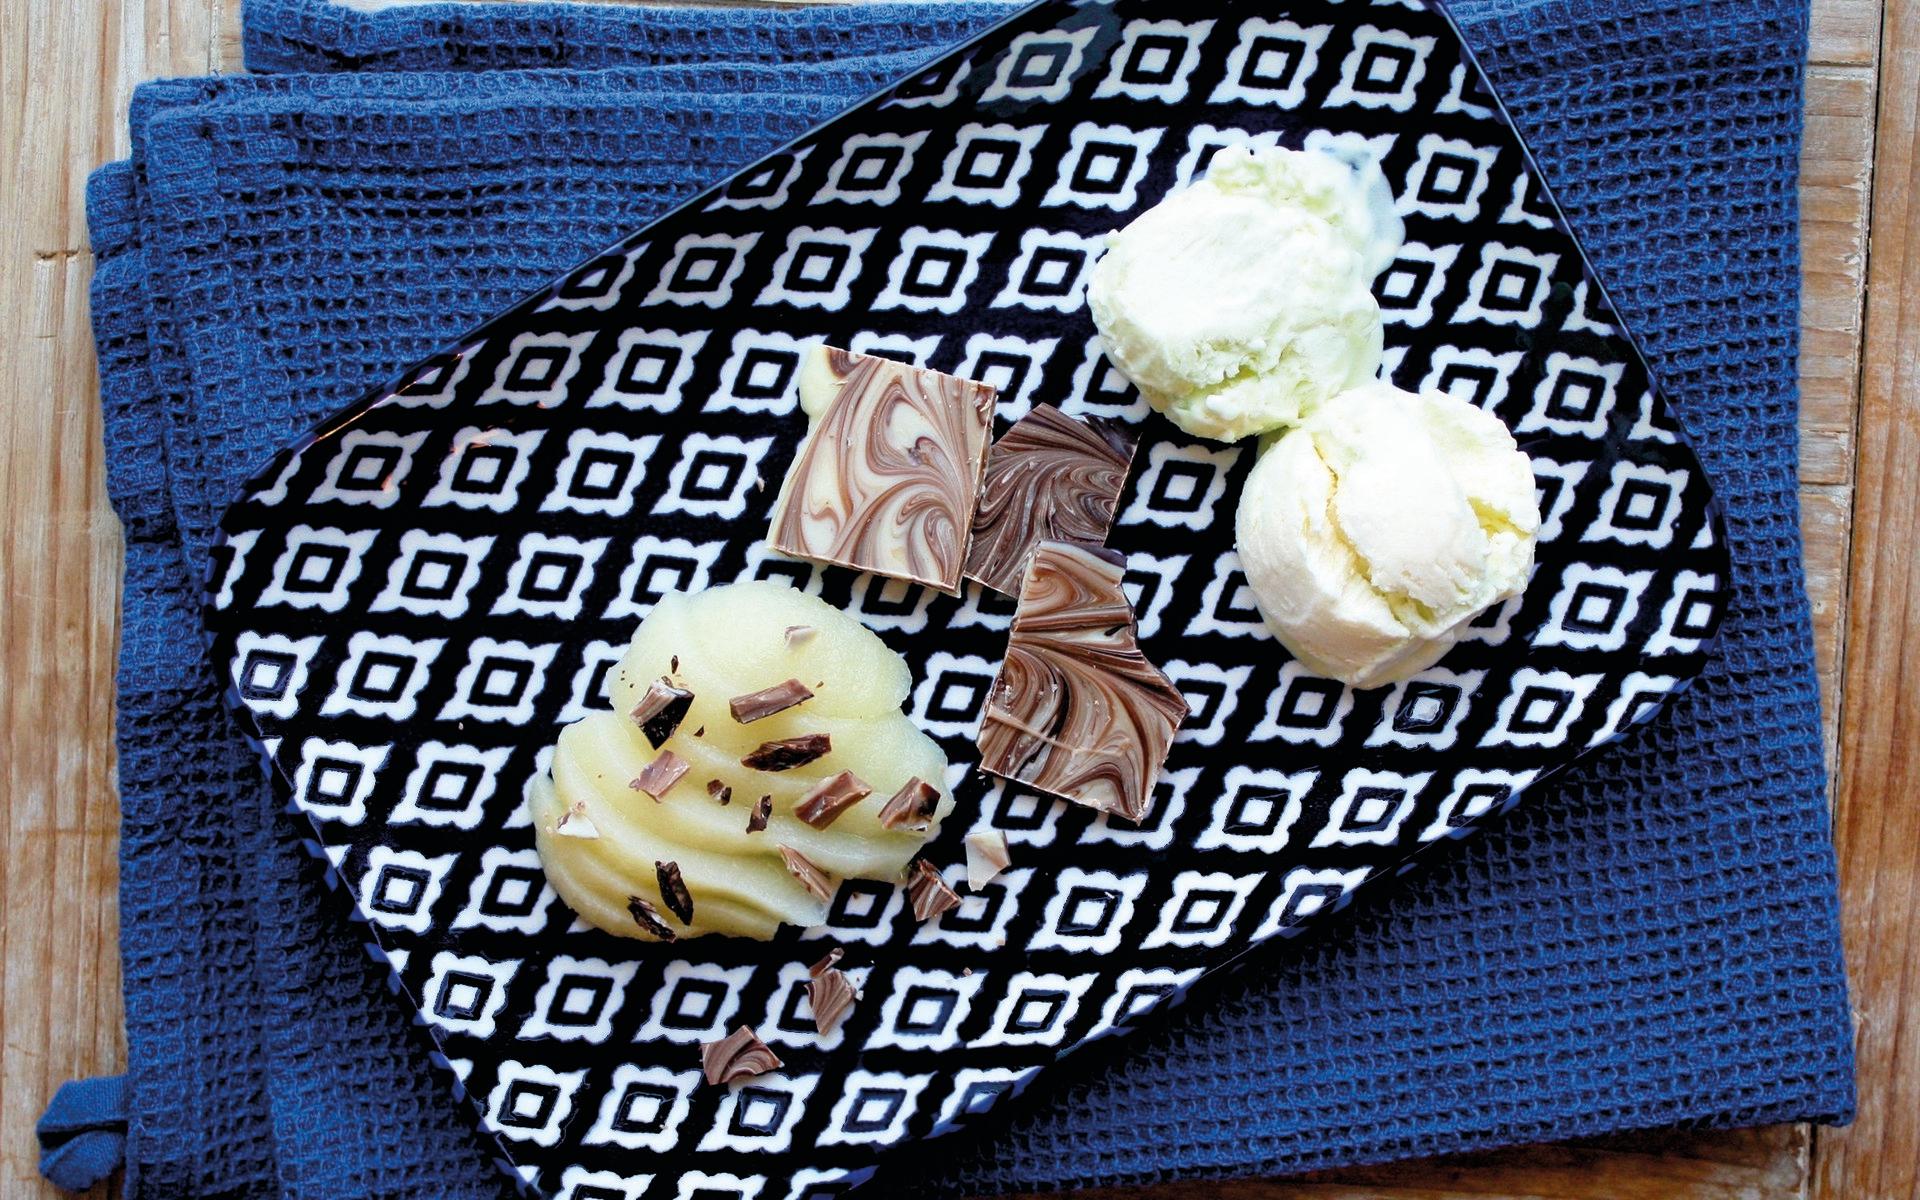 Hemmagjord mintglass med chokladbräck och päron.